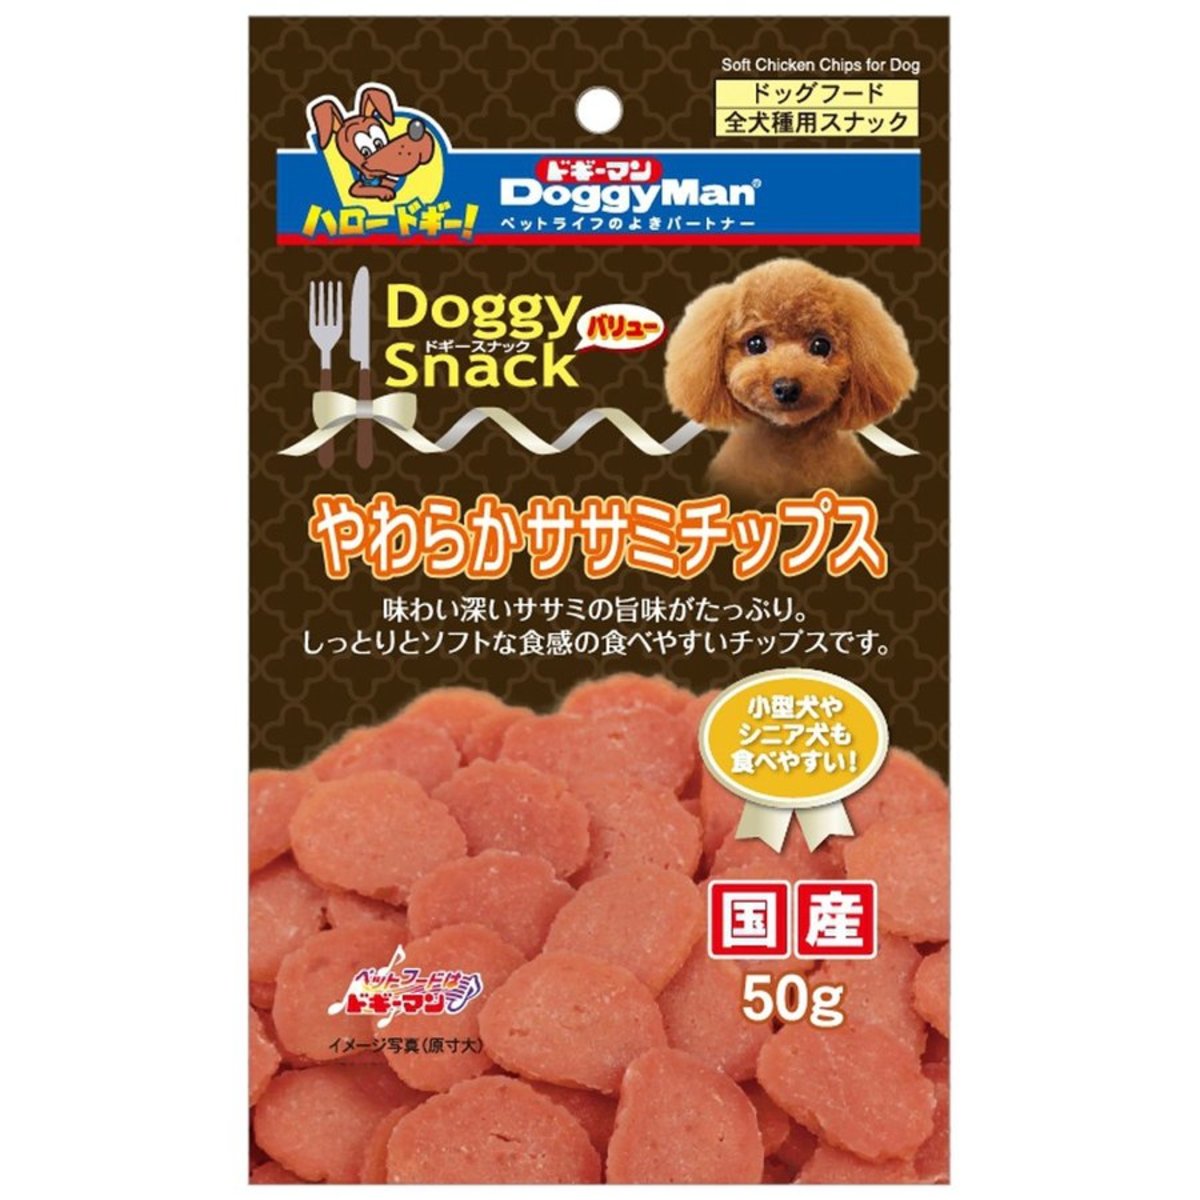 DoggyMan 日本狗零食 柔軟雞肉腸切片 50g (犬用) 5821055